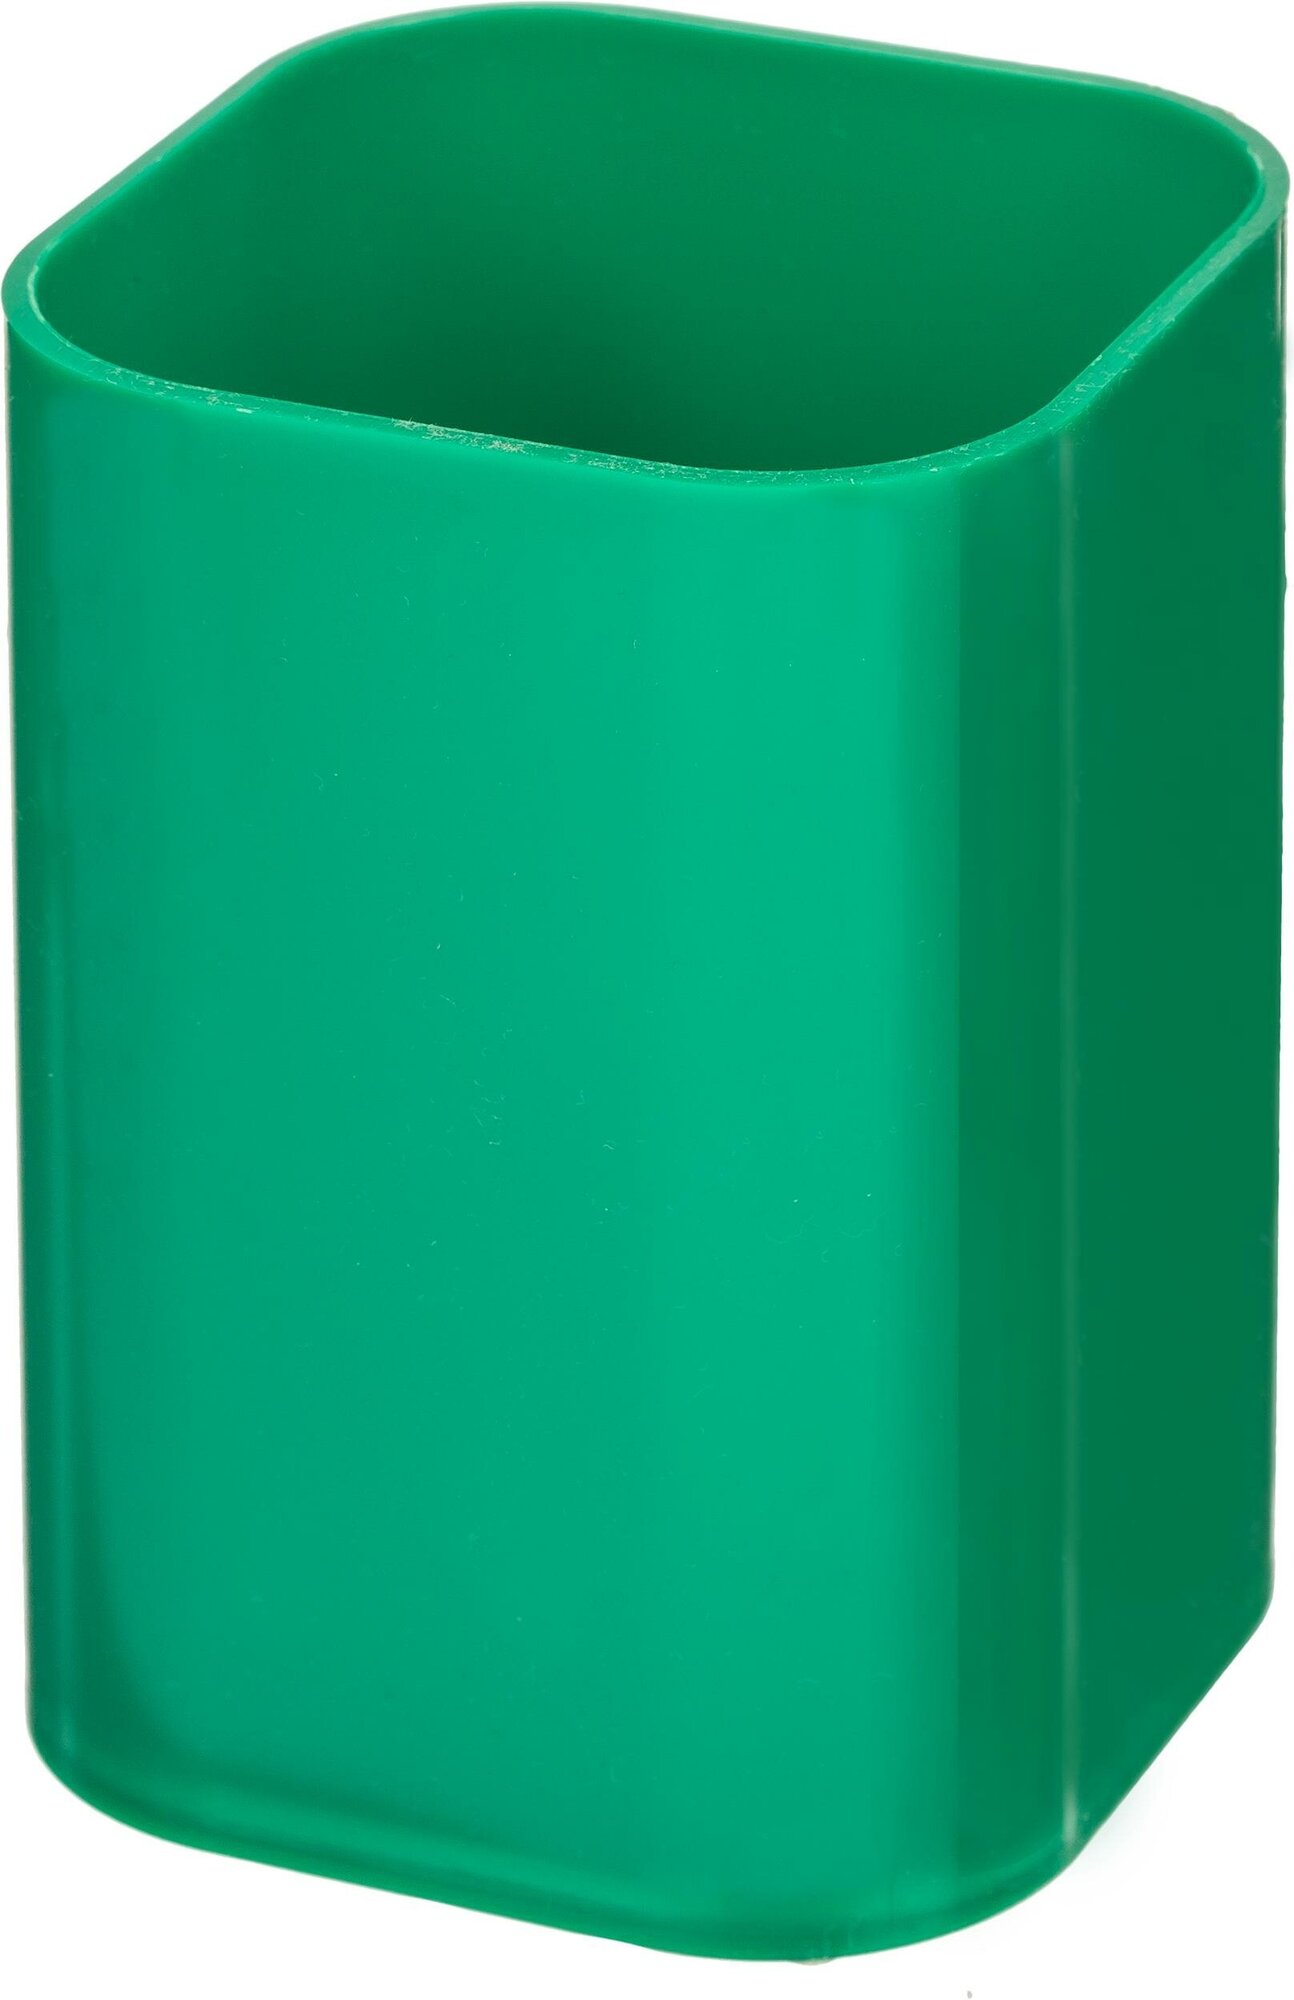 Подставка-стакан для ручек Attache, зеленый